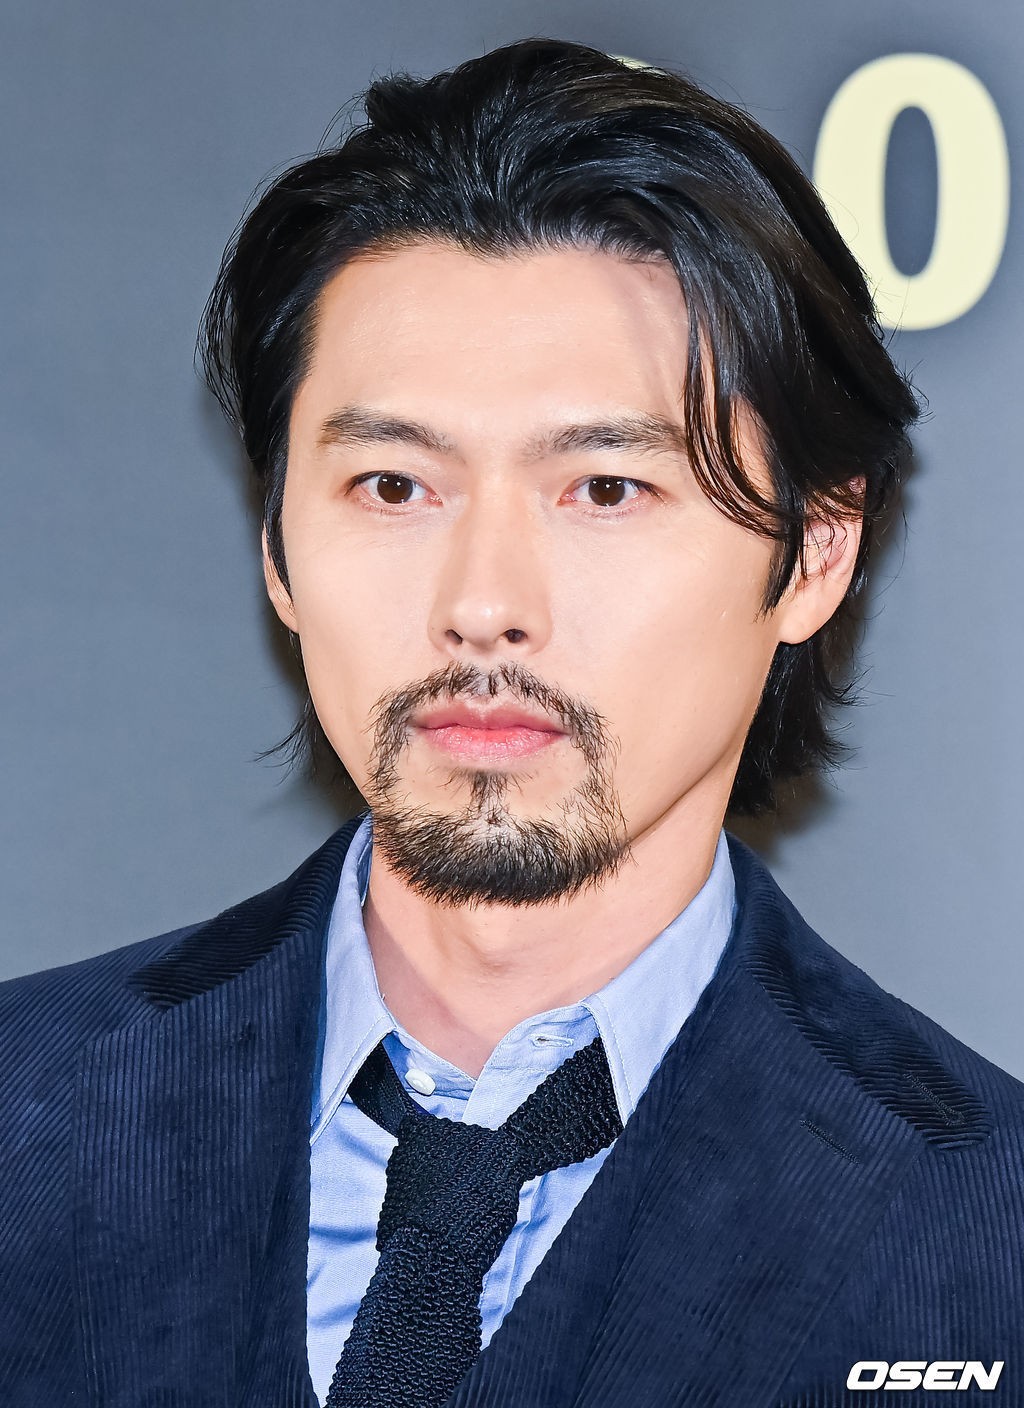 Hyun Bin xuất hiện với diện mạo của đặc vụ NIS trong phim mới 'The Point Men'. Anh gầy hơn, tóc dài, râu rậm để phù hợp với vai chính trong tác phẩm, tuy nhiên vẫn giữ được phong độ nam tính.